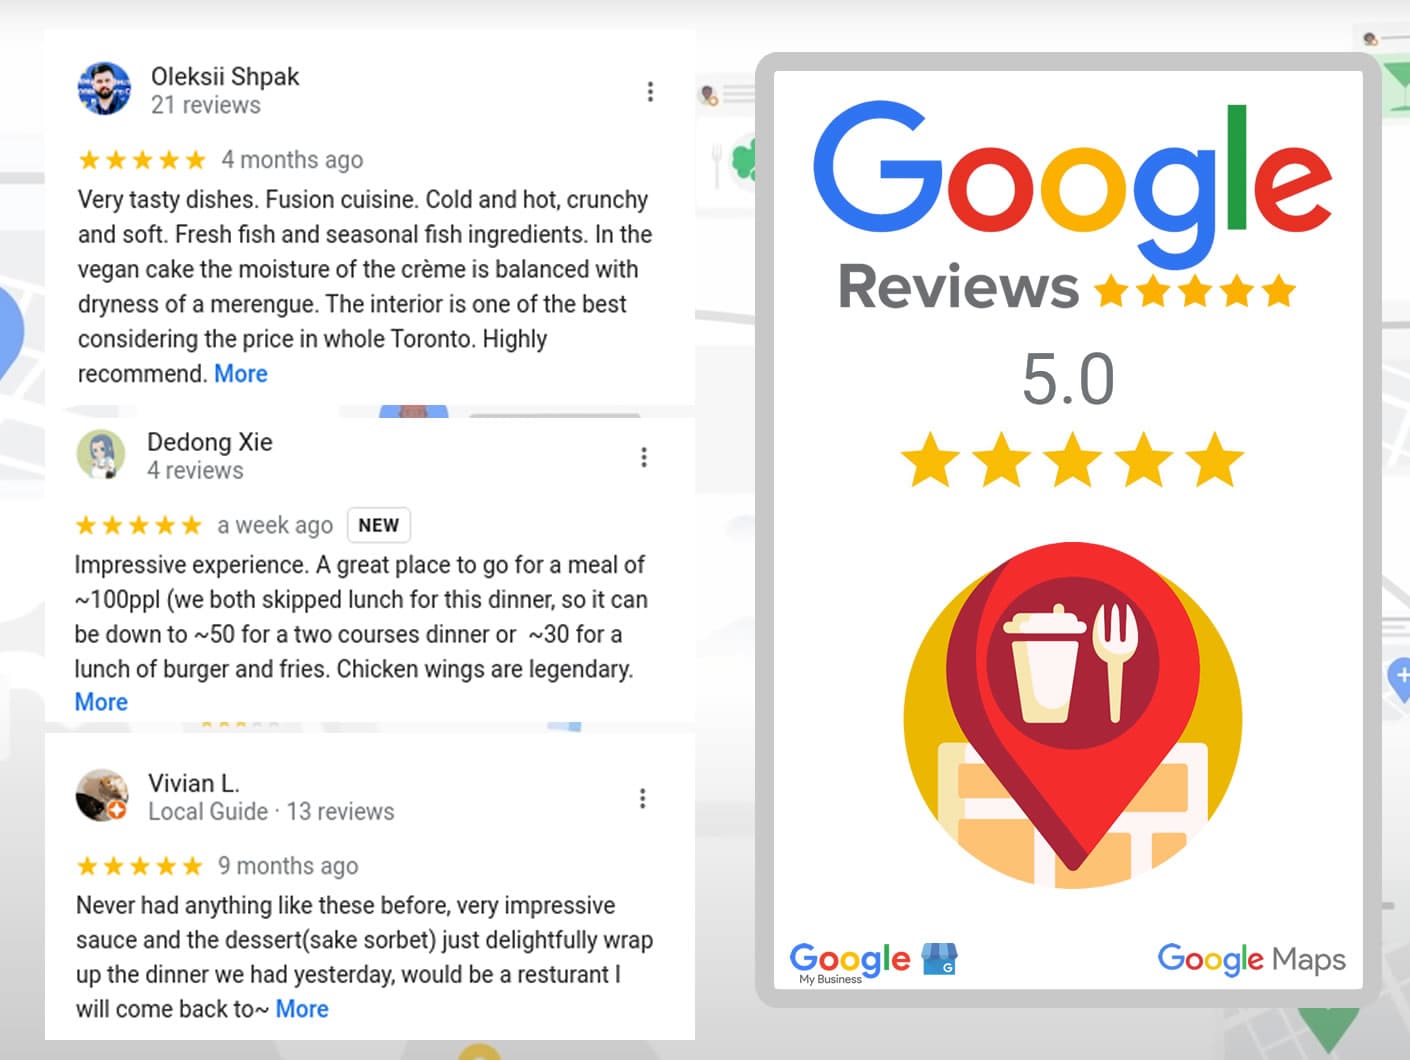 Google Restaurantbewertungen kaufen - Steigern Sie den Online-Ruf Ihres Restaurants mit authentischen und überzeugenden Bewertungen.